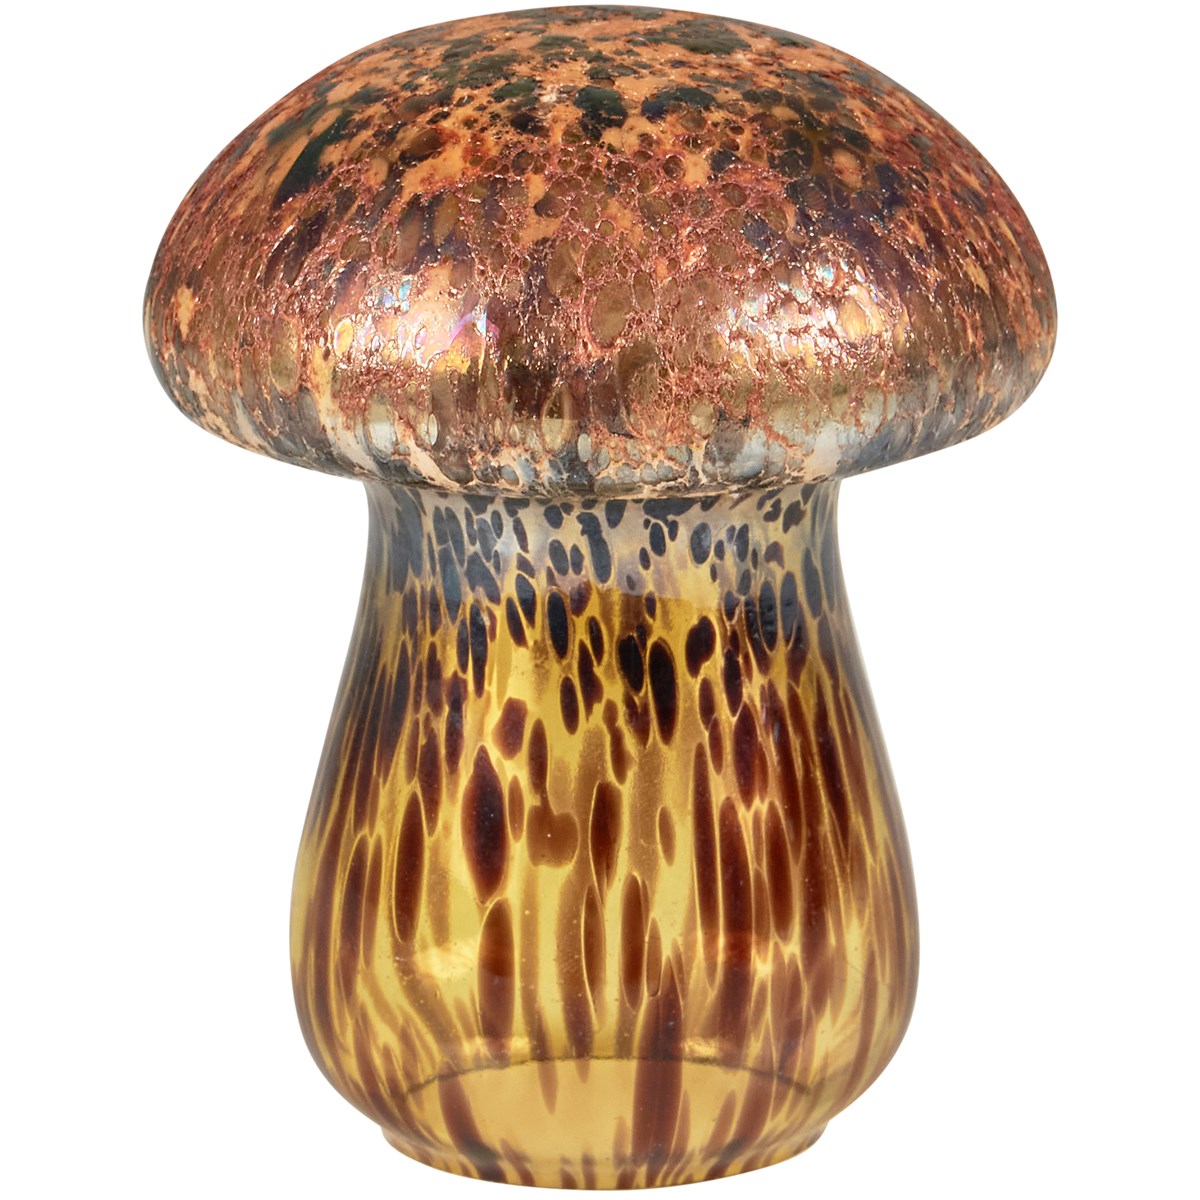 Tortoiseshell Mushroom Figurine - Glass